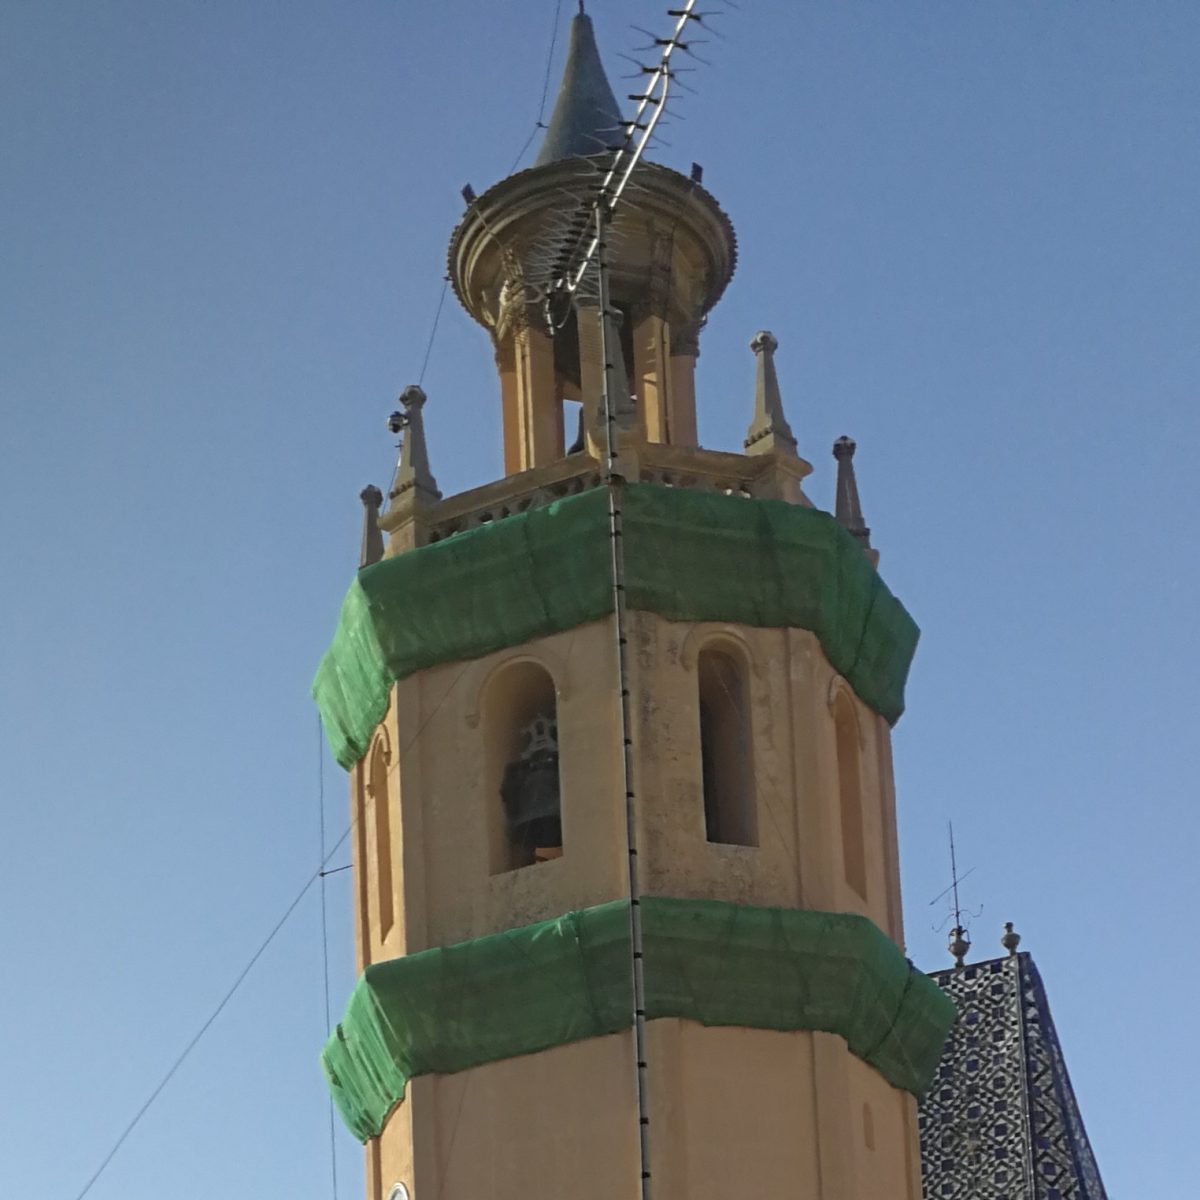 Església de Santa Maria, Arenys de Mar